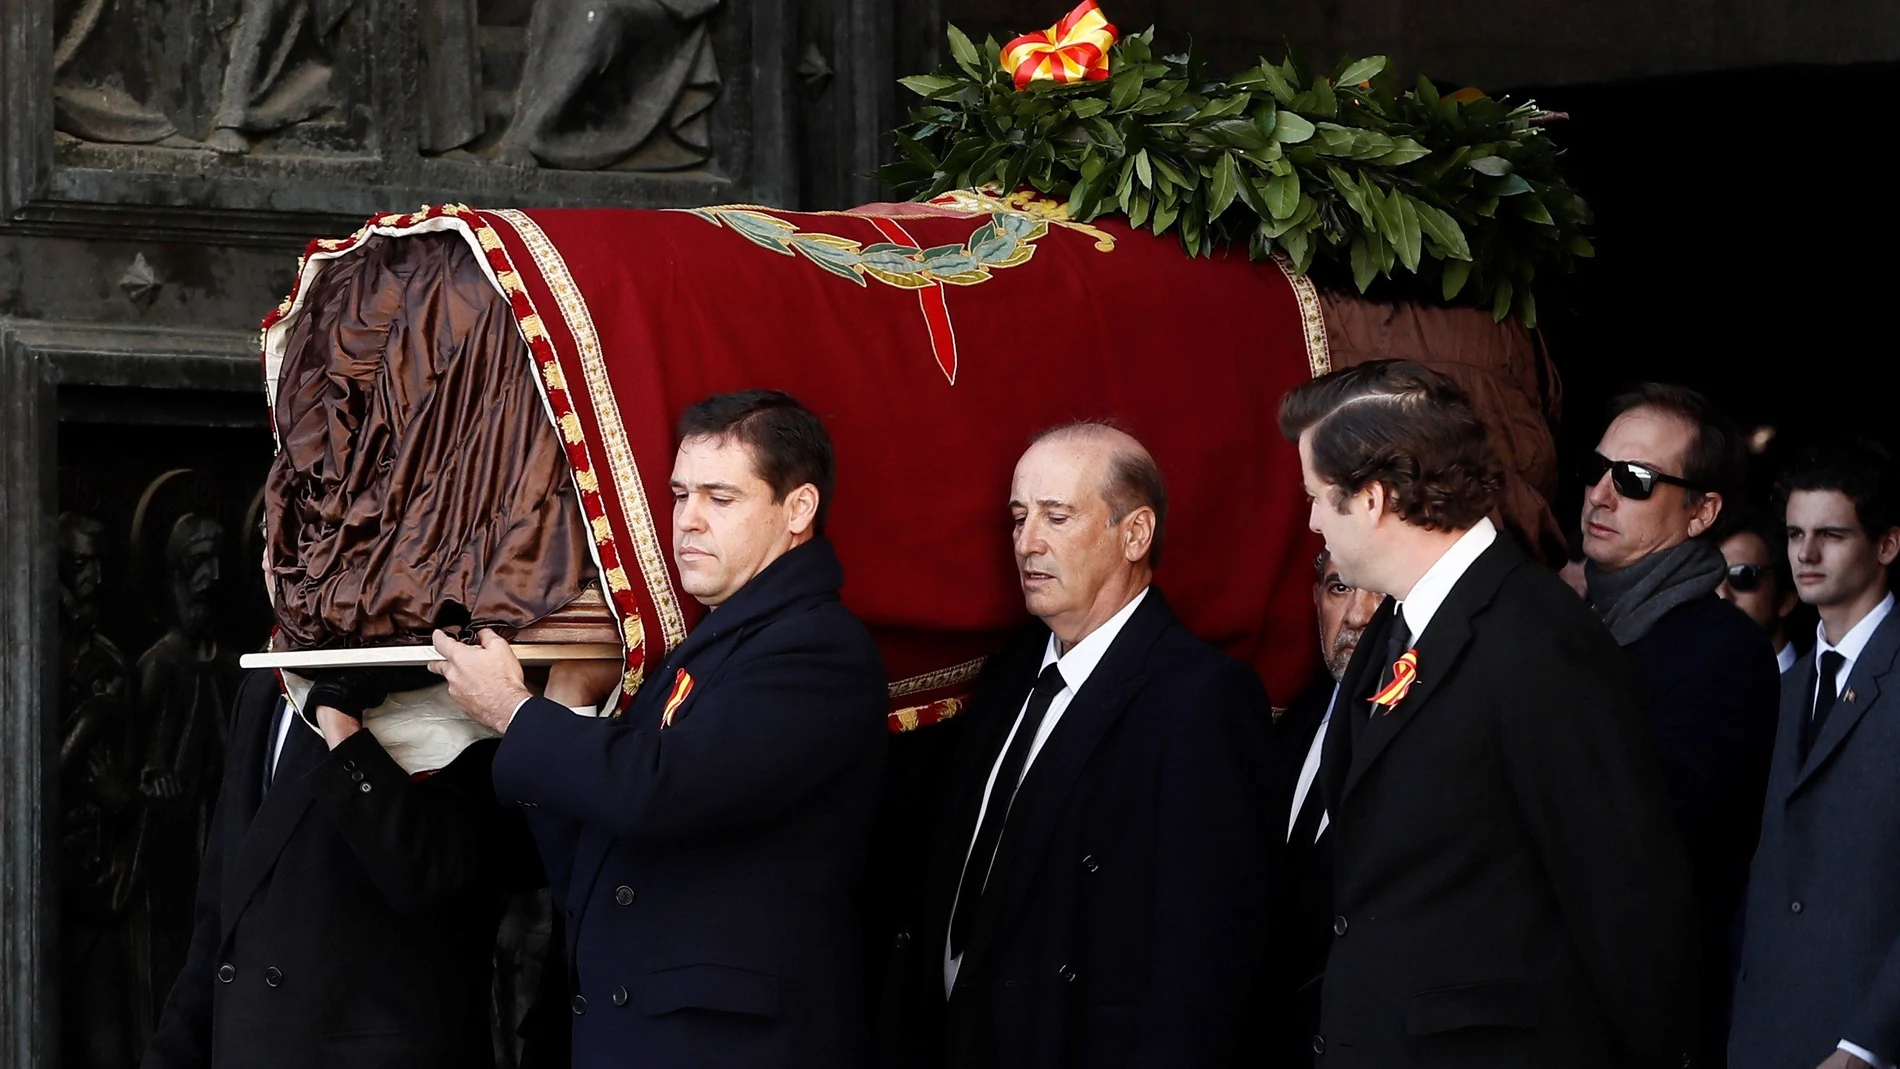 Los familiares portan el féretro a la salida de la basílica del Valle de los Caídos, el pasado 24 de octubre. En el centro, Francisco Franco Martínez-Bordiú. A la izquierda, el bisnieto Luis Alfonso de Borbón